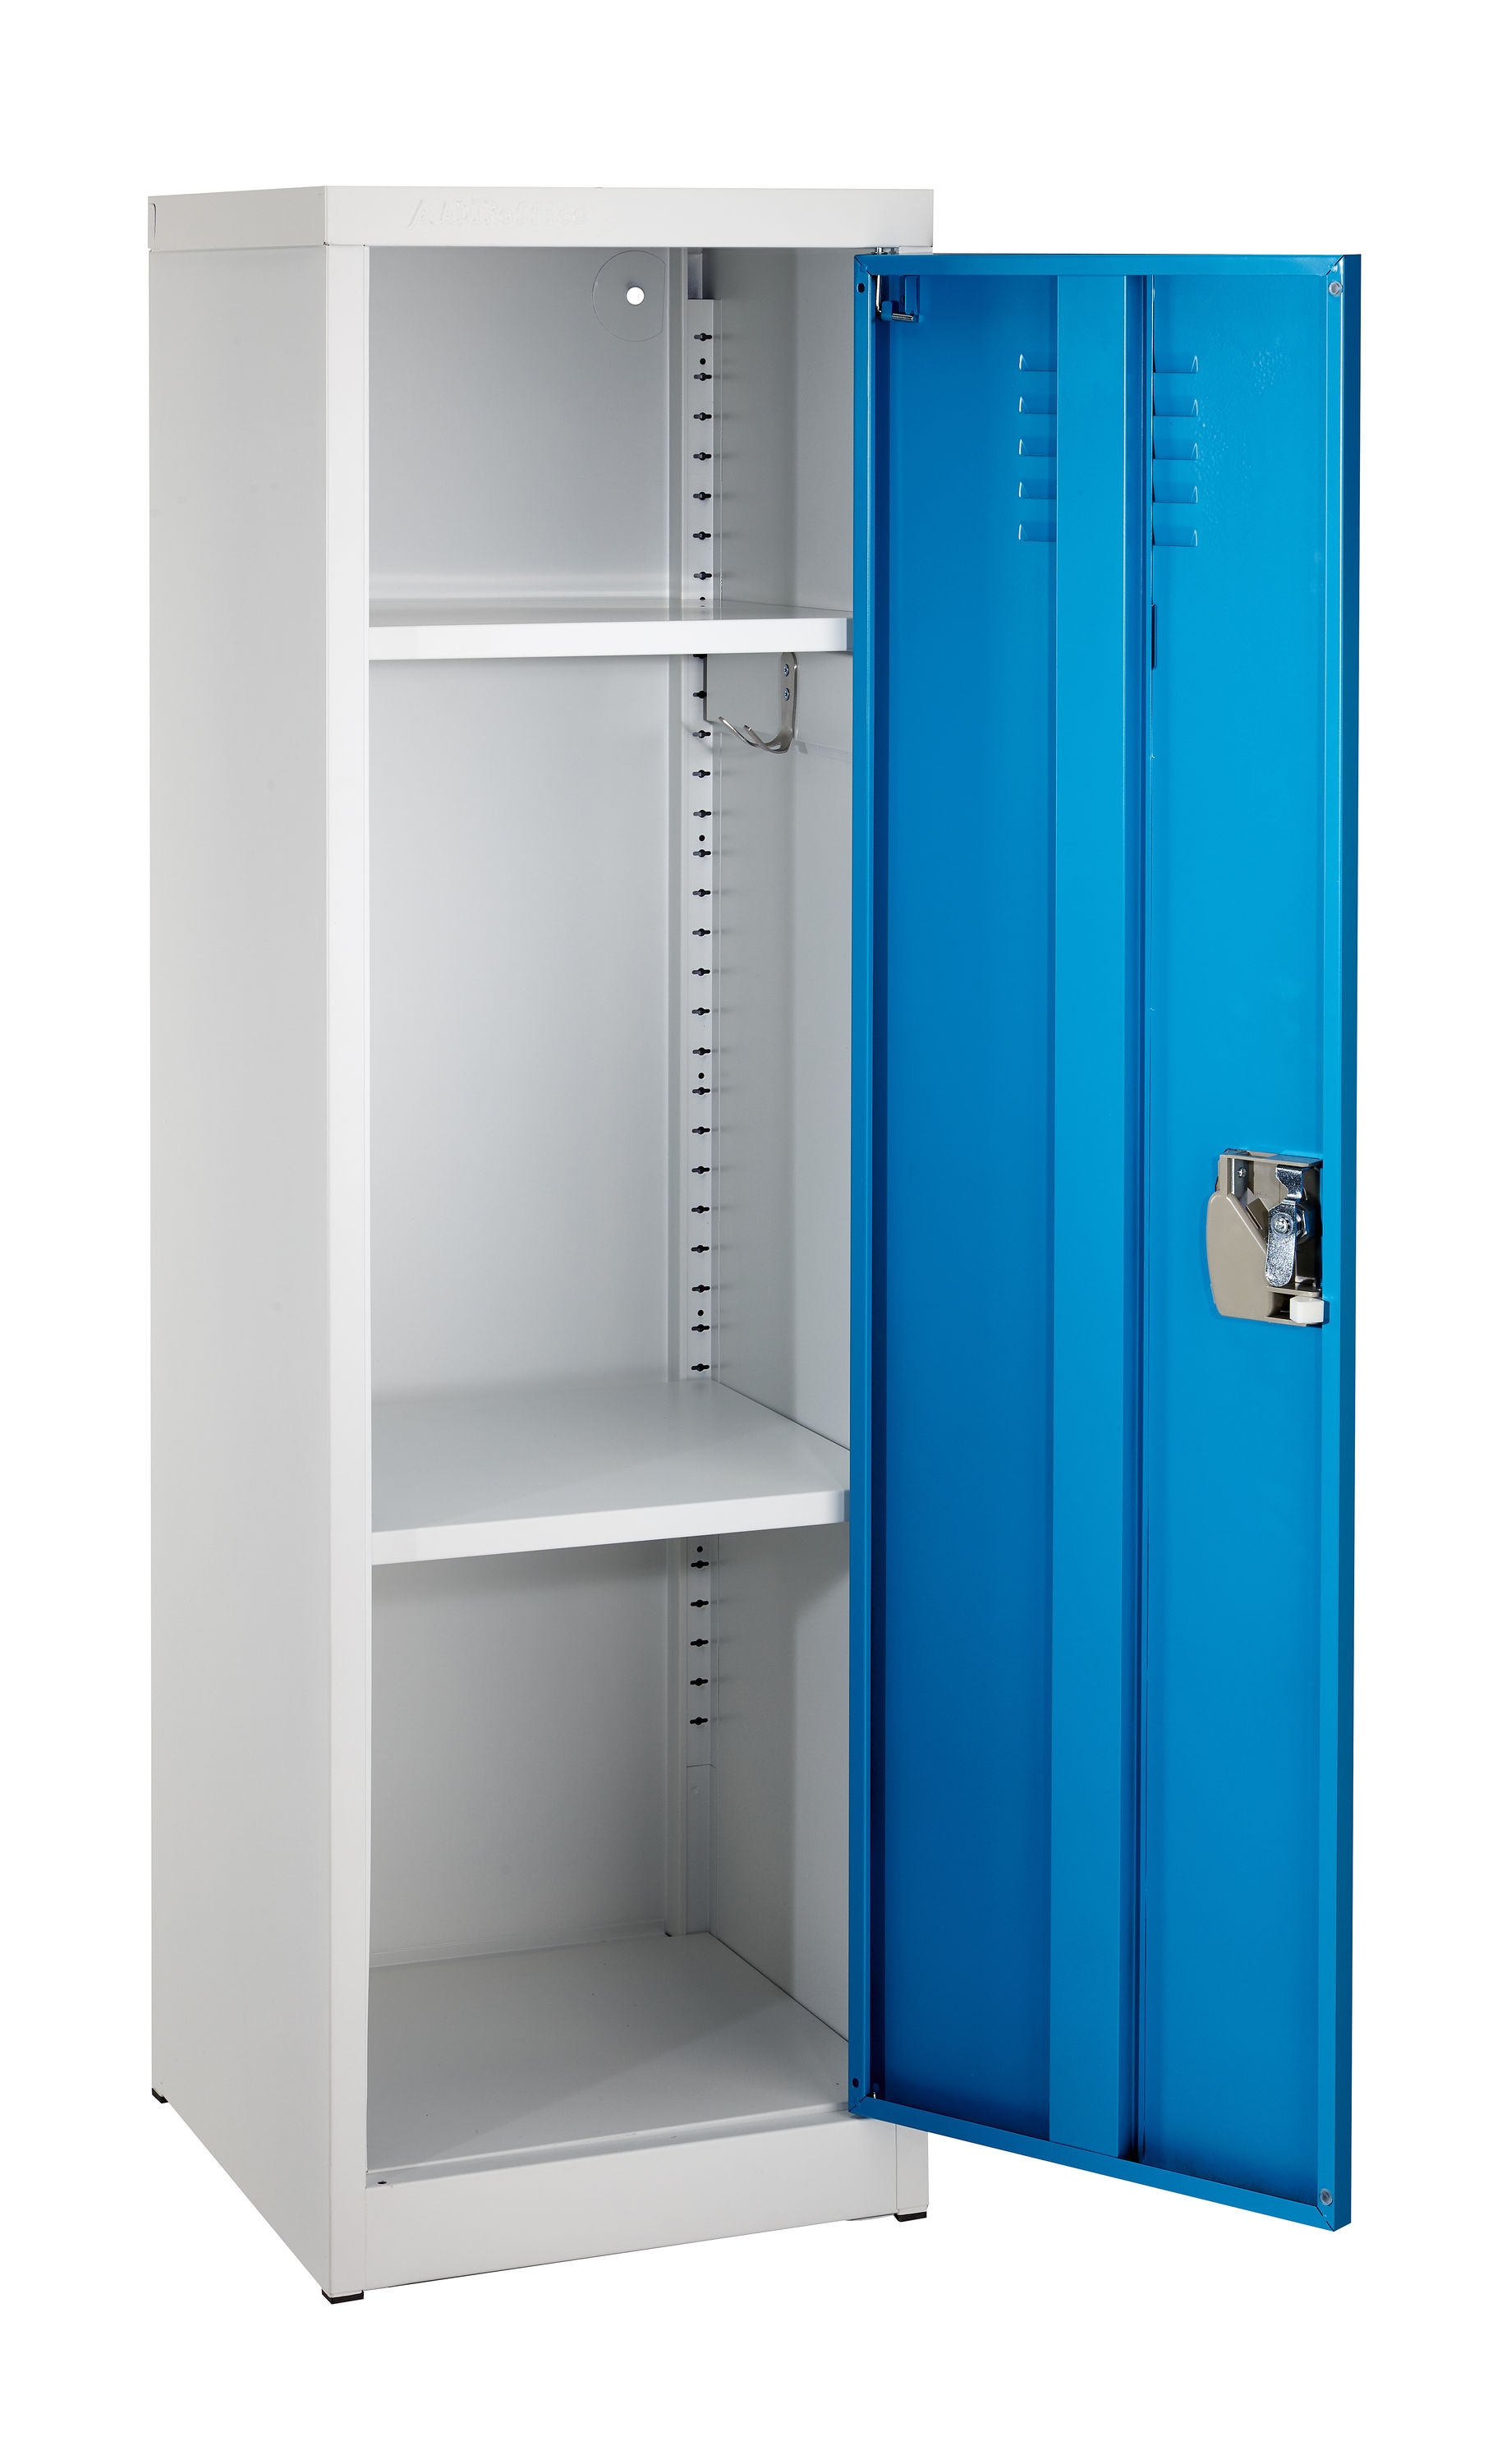 AdirOffice 48-in H x 15-in W x Single 12-in Full 48-in Storage x 12-in D H Tier in Blue Steel Lockers at Locker W Steel